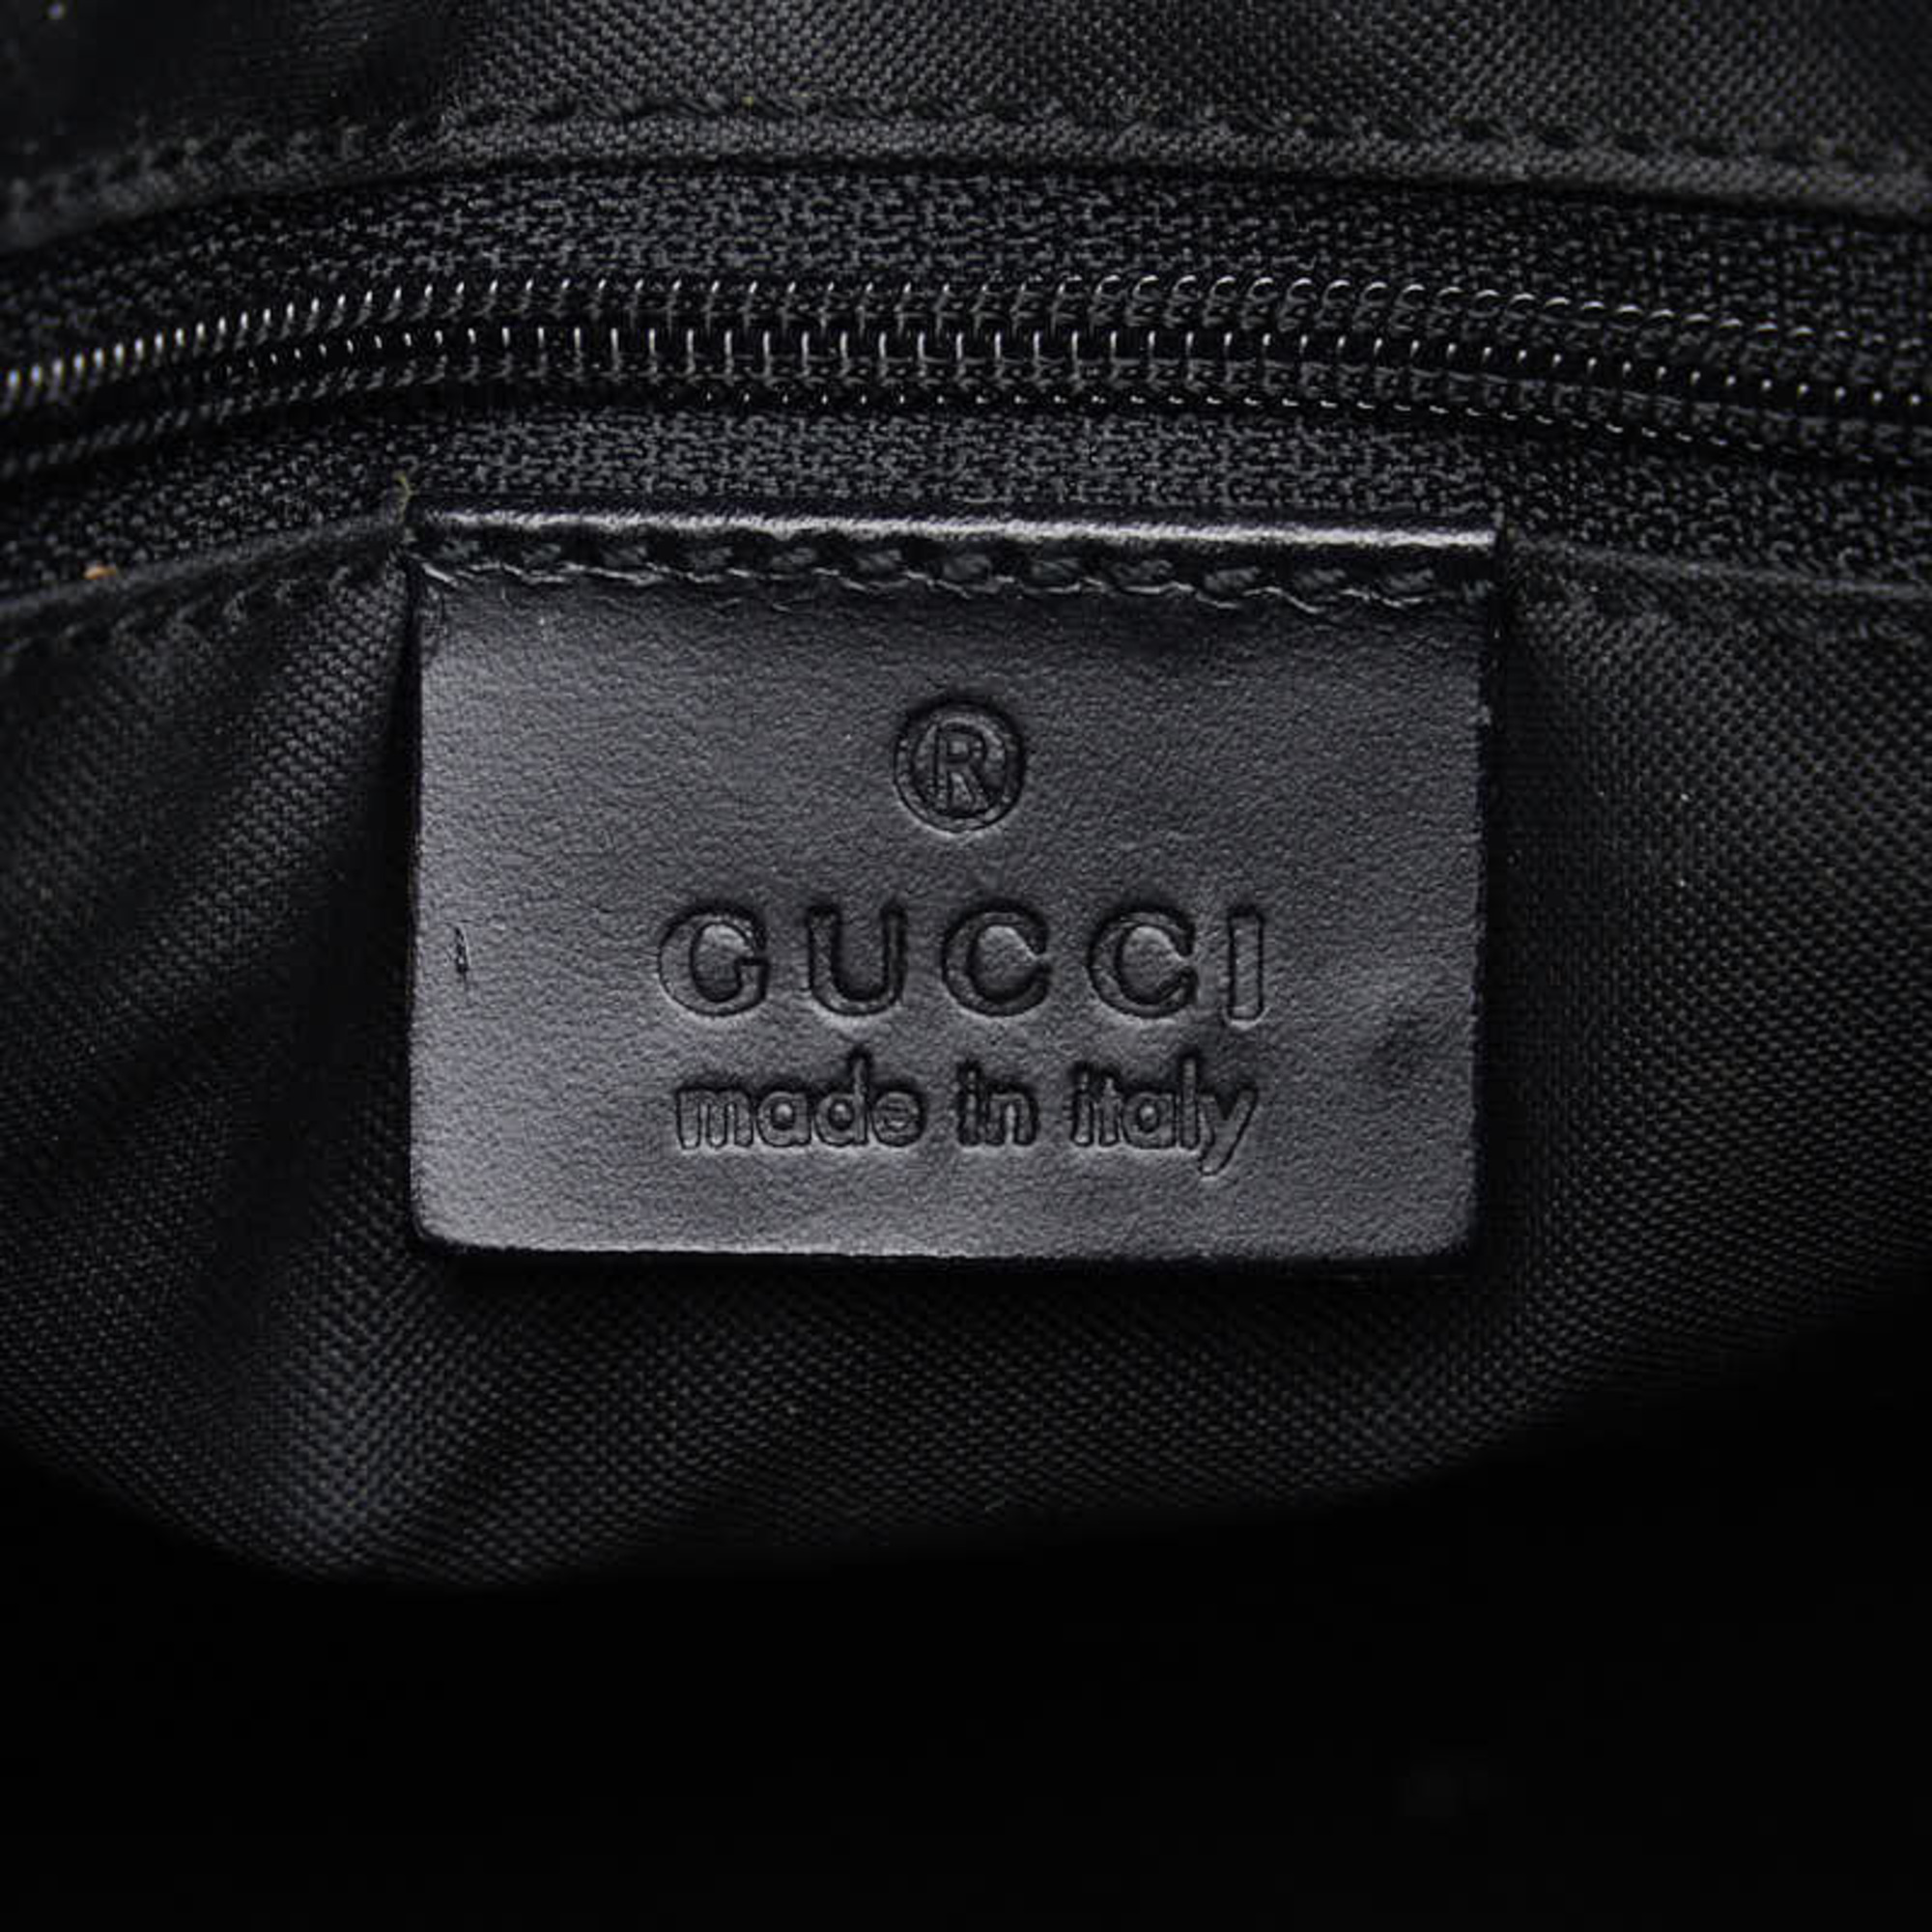 Gucci GG Canvas Bag 001 3766 Black Leather Women's GUCCI